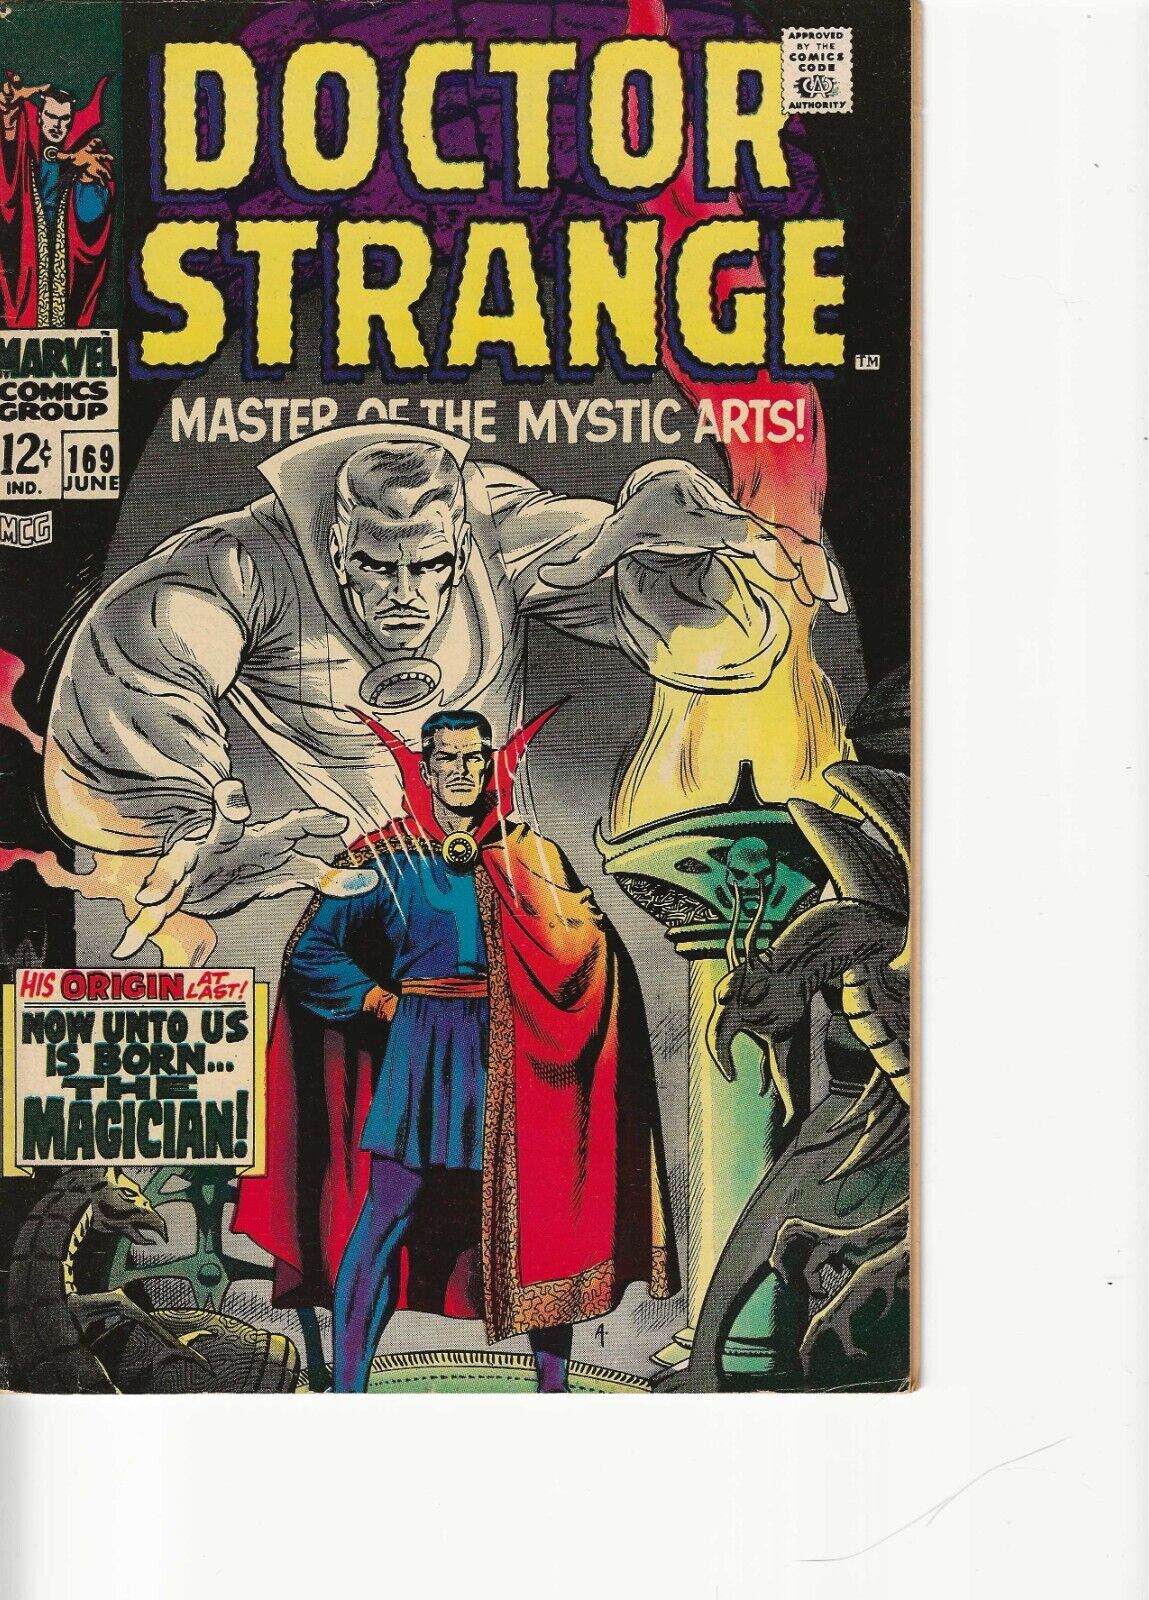 Dr. Strange High-Grade Lot 169/170/179 Origin Story Key Issue